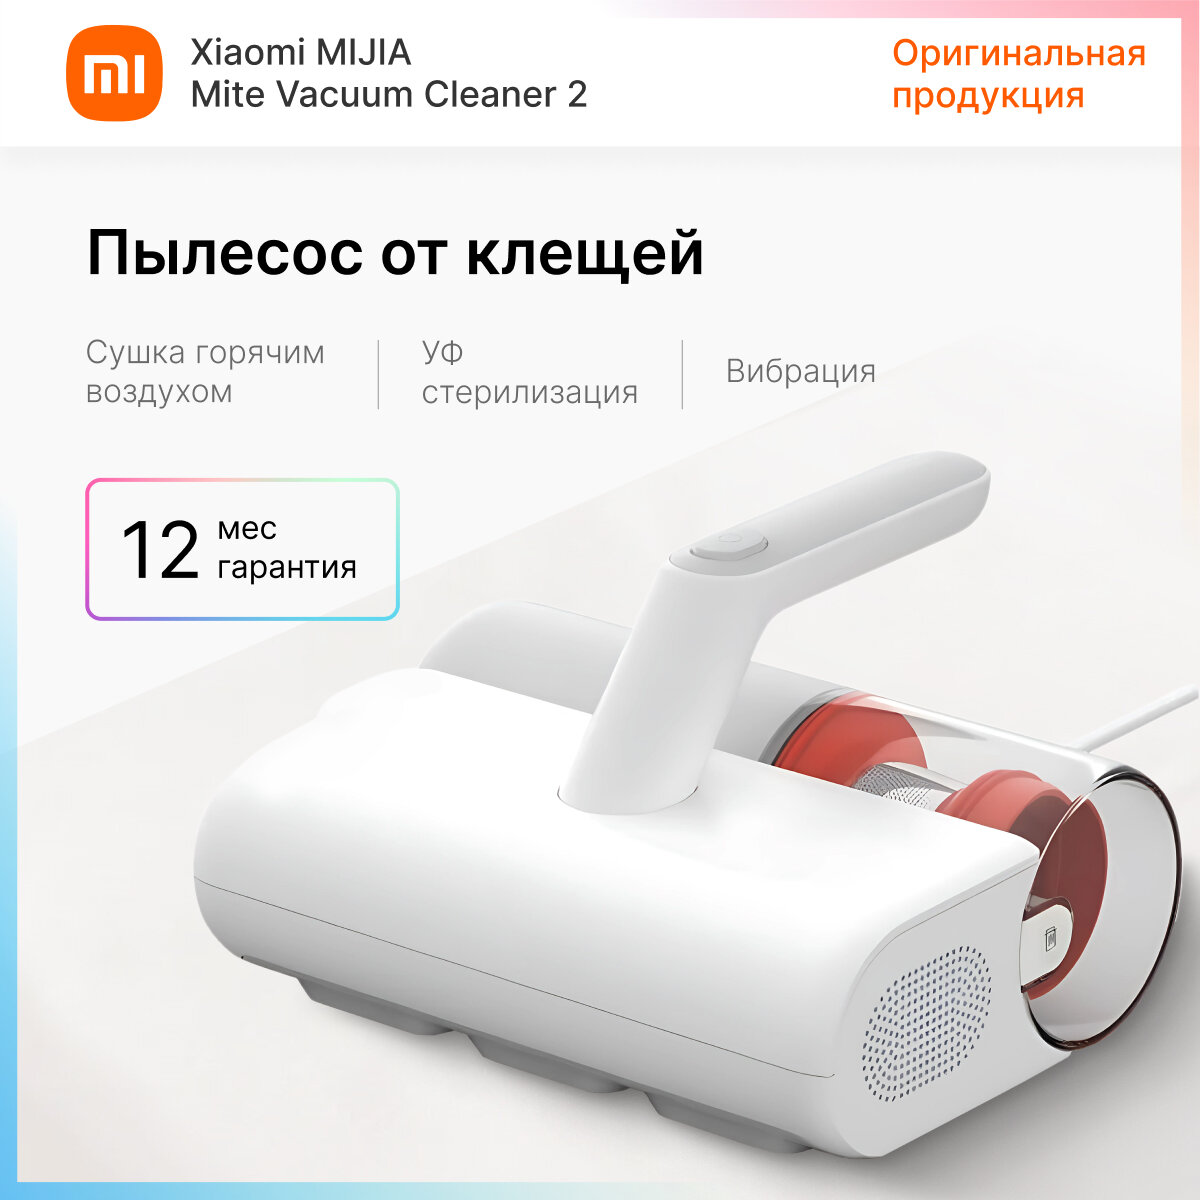 Пылесос от пылевых клещей Xiaomi Mijia Mite Vacuum Cleaner 2